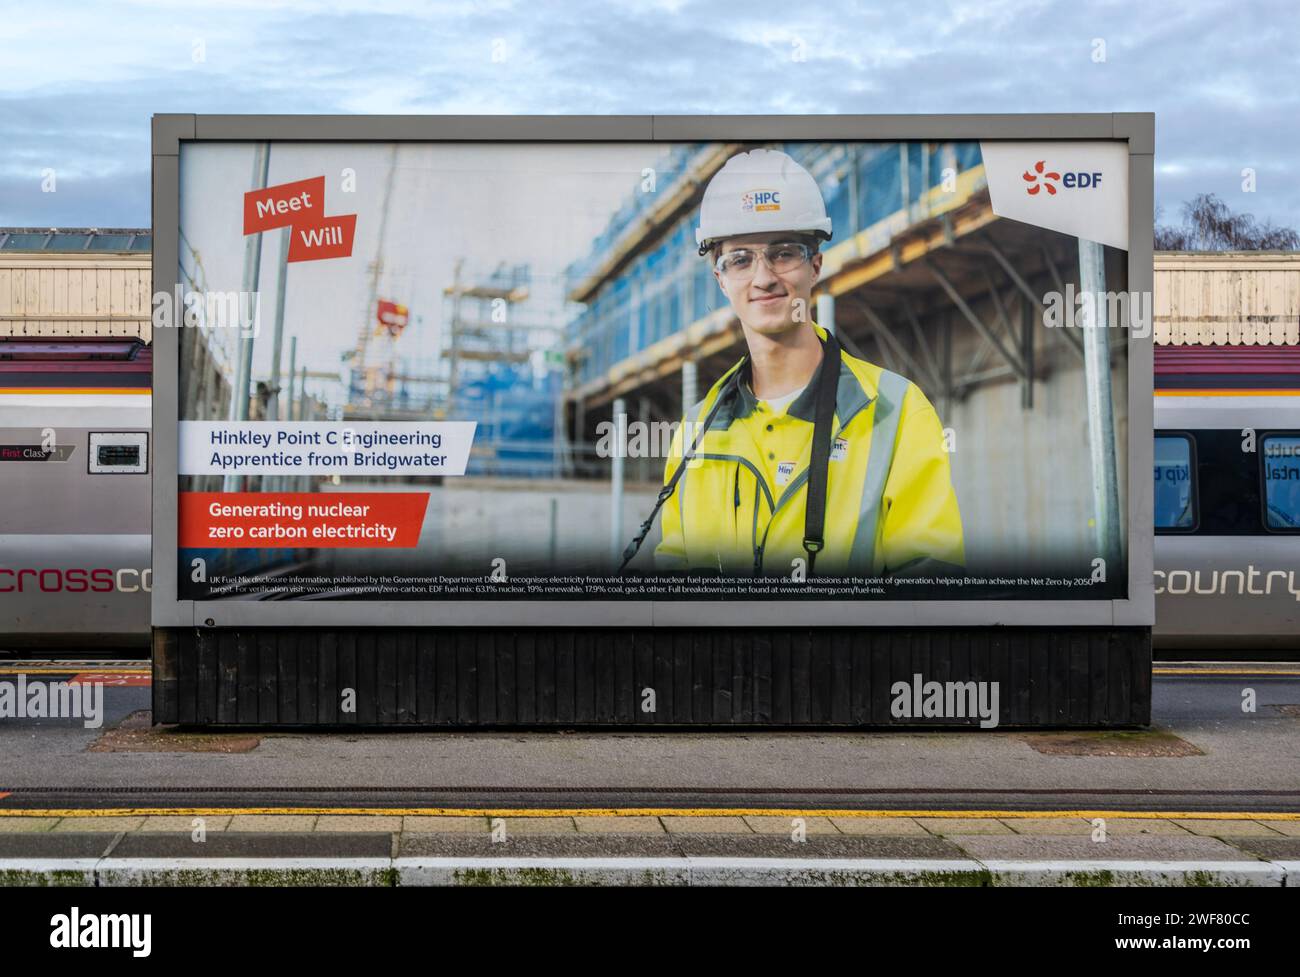 Hinkley Point C Kernkraftwerk Beschäftigung Werbetafel EDF Werbung für lokale Jobs, Taunton, Somerset, England, Vereinigtes Königreich Stockfoto